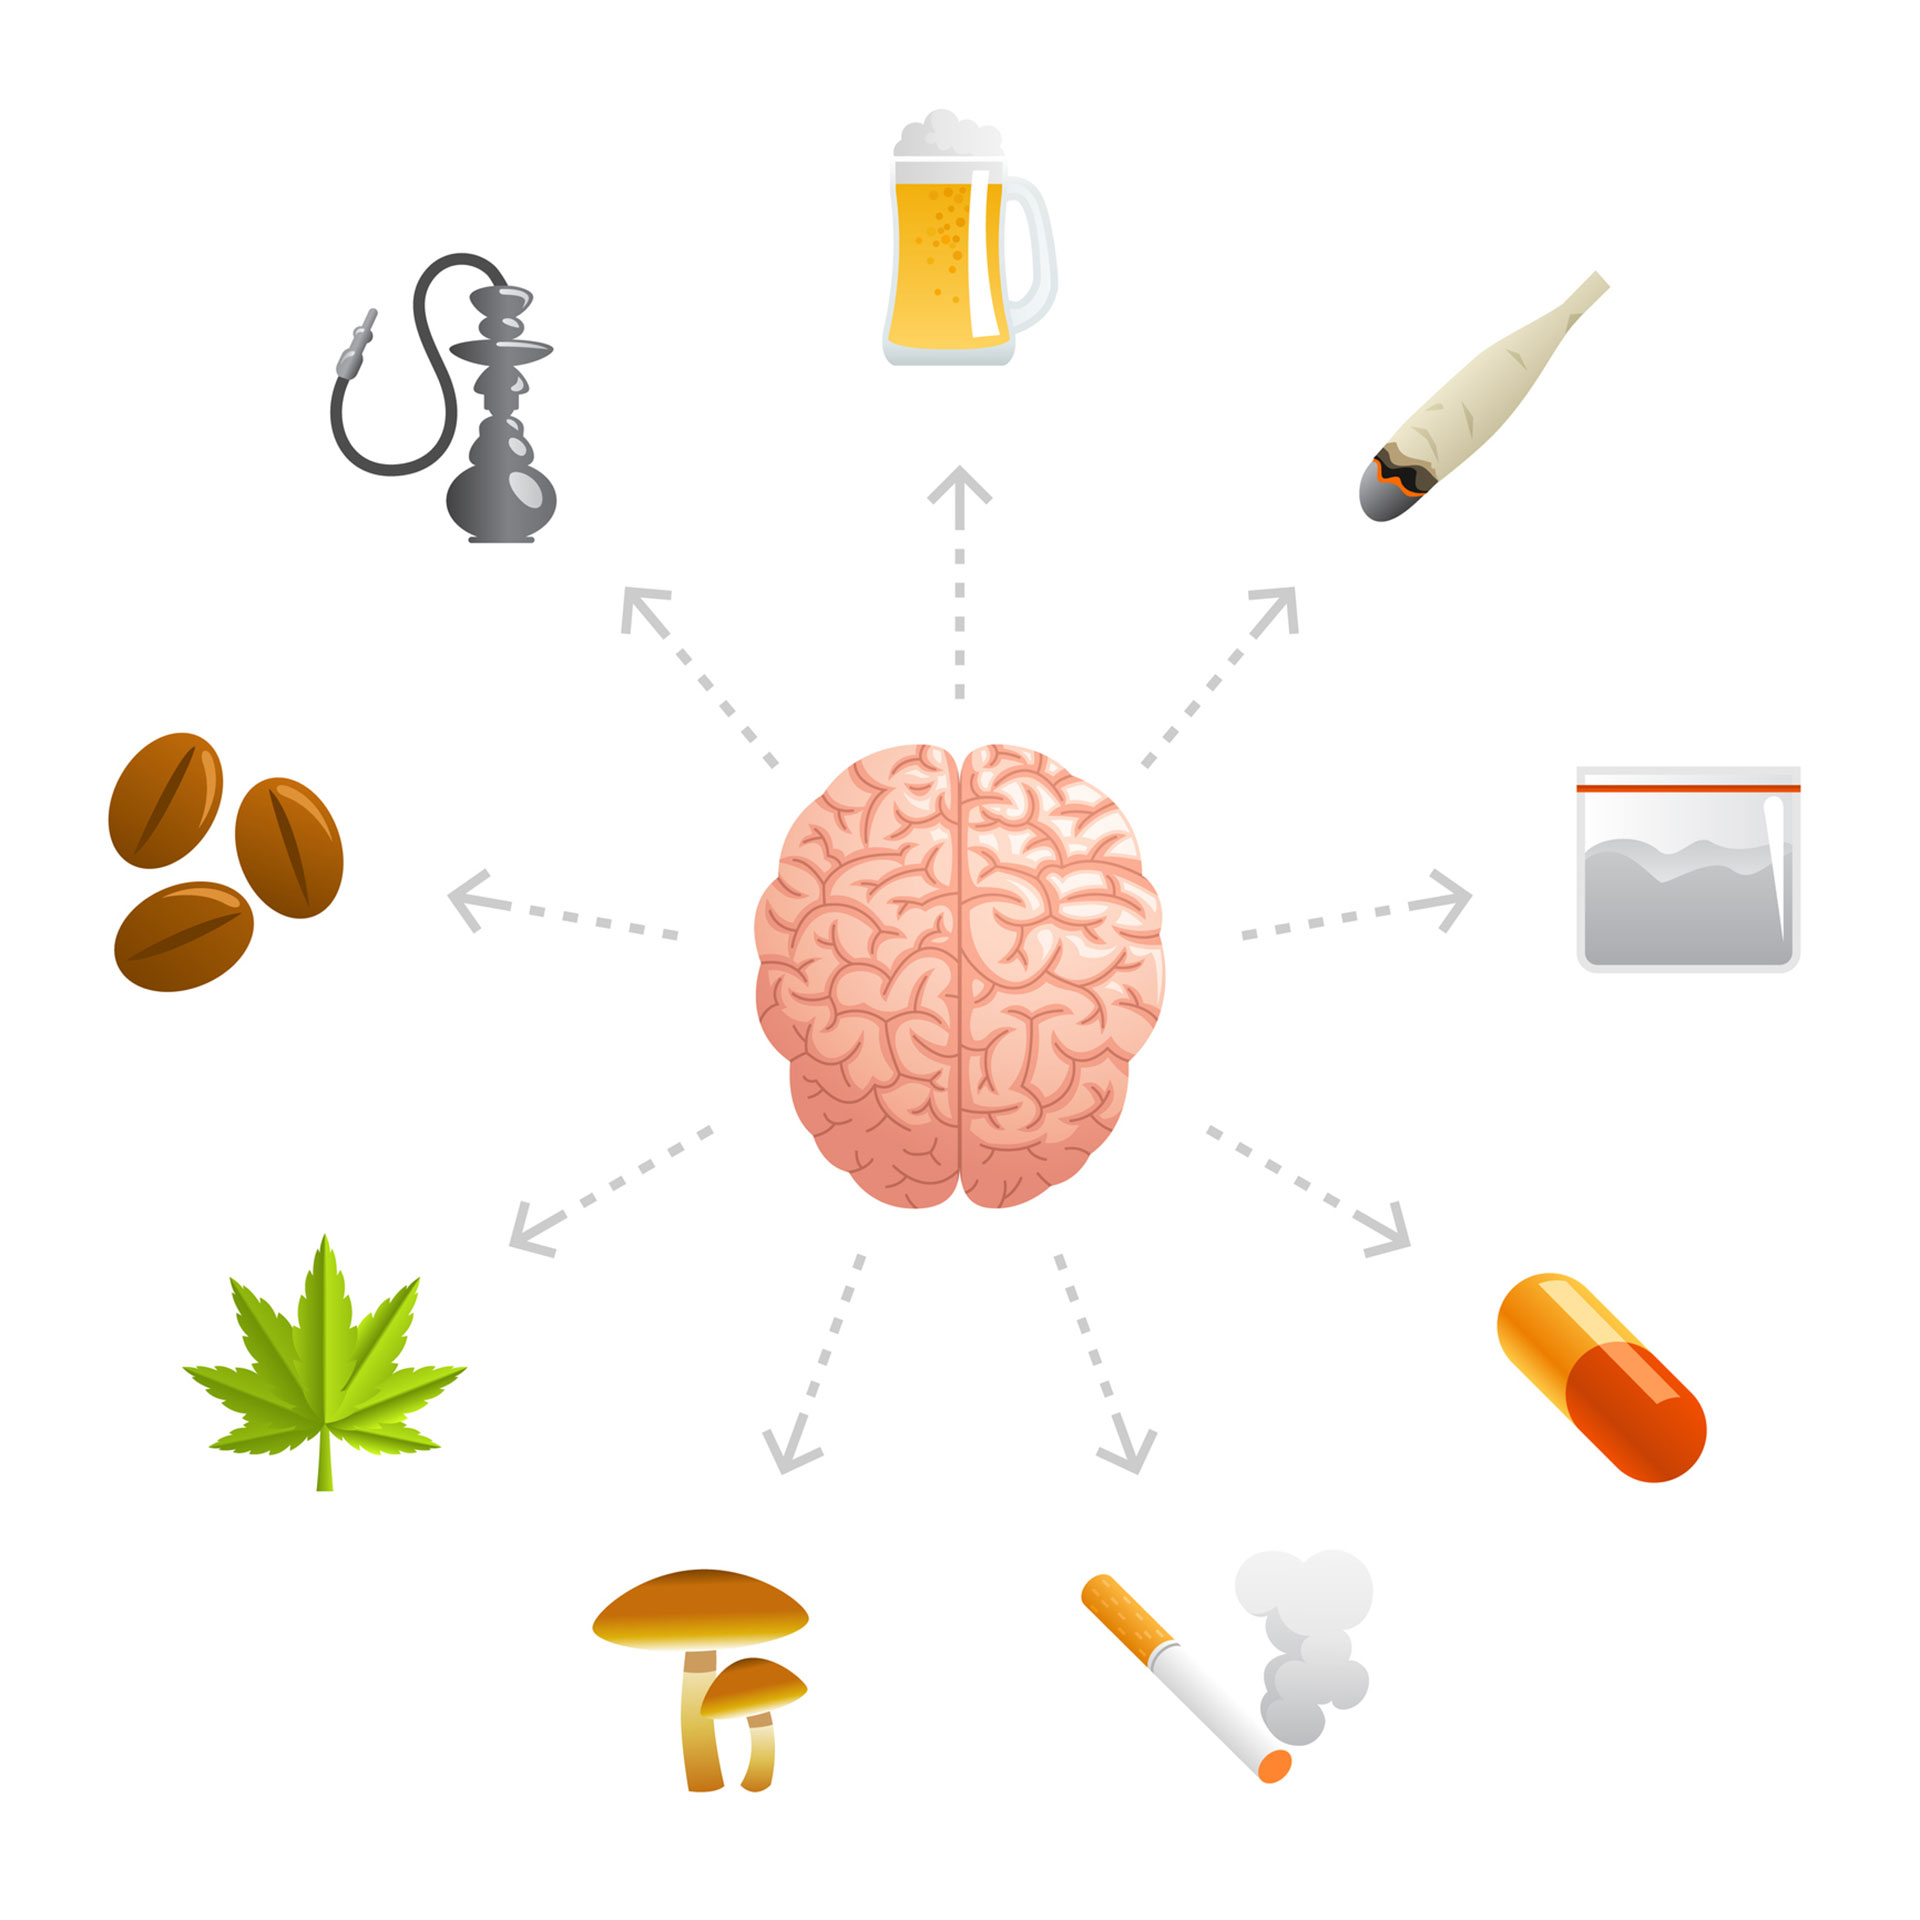 La investigación de la UCA  propone una forma de clasificar los diversos abordajes de tratamiento del consumo problemático de sustancias psicoactivas y se describen algunas formas de tratamiento transversales o complementarias a estas categorías. (Getty)